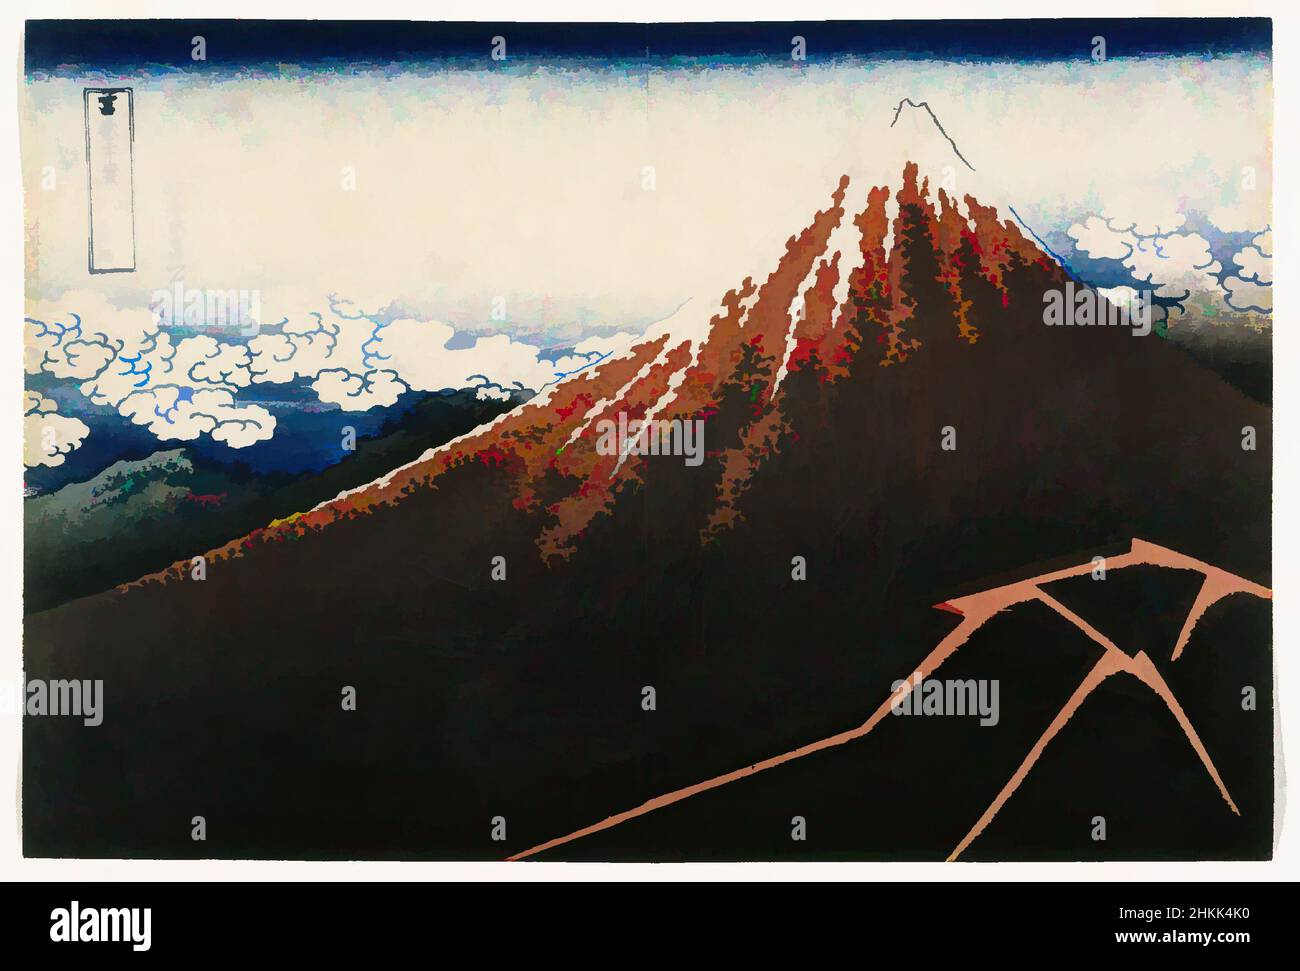 Kunst inspiriert von Regensturm unter dem Gipfel, aus der Serie 36 Ansichten des Fuji-Berges, aus der Serie: '36 Ansichten des Fuji', Katsushika Hokusai, japanisch, 1760-1849, Farbholzschnitt auf Papier, Japan, ca. 1832, Edo-Zeit, 9 7/8 x 14 5/8 Zoll, 25,1 x 37,1 cm, Japan, Klassisches Werk, modernisiert von Artotop mit einem Schuss Moderne. Formen, Farbe und Wert, auffällige visuelle Wirkung auf Kunst. Emotionen durch Freiheit von Kunstwerken auf zeitgemäße Weise. Eine zeitlose Botschaft, die eine wild kreative neue Richtung verfolgt. Künstler, die sich dem digitalen Medium zuwenden und die Artotop NFT erschaffen Stockfoto